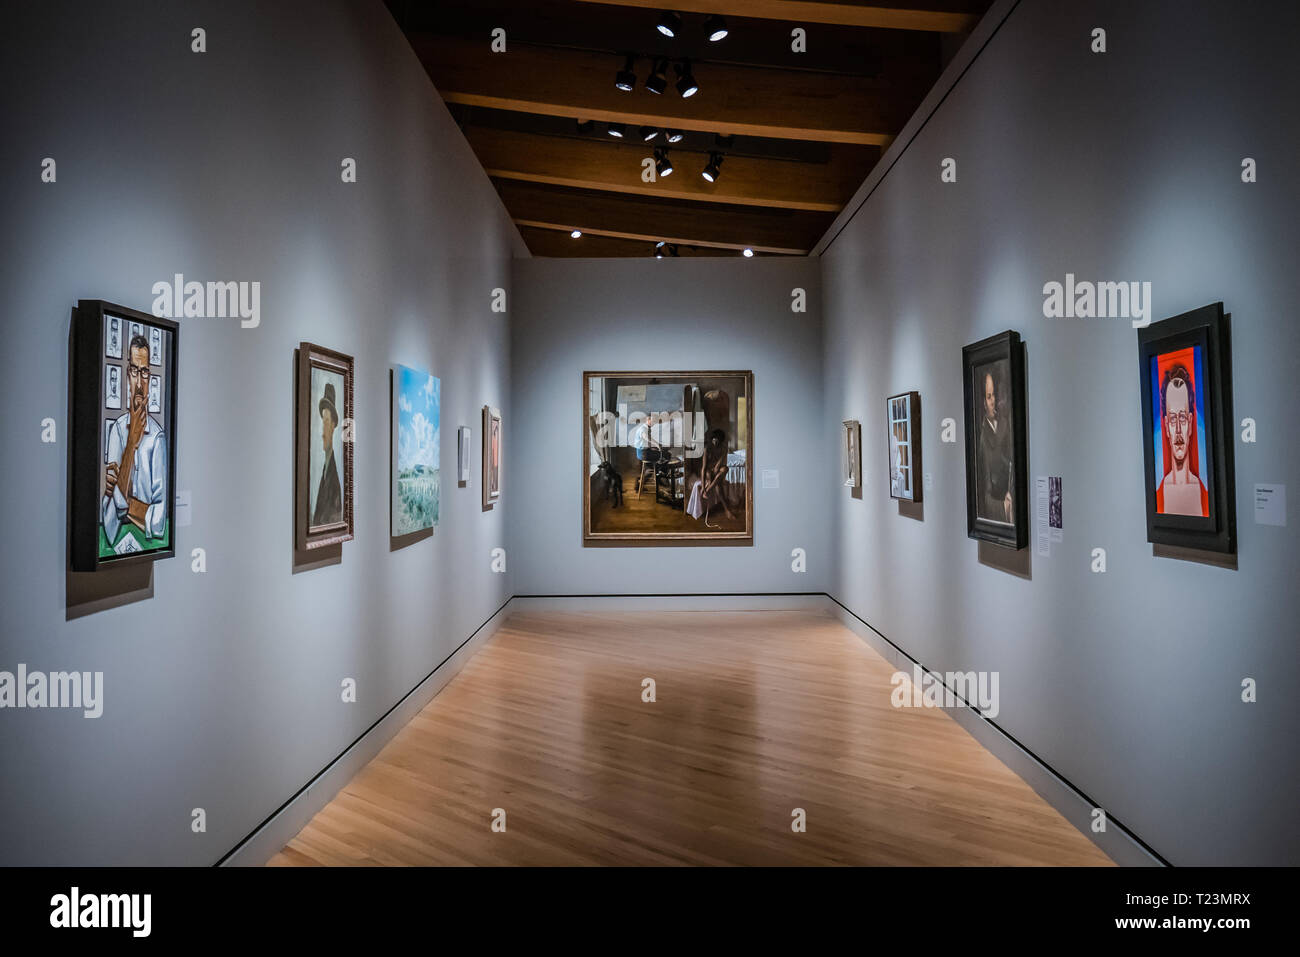 Pintura al óleo en las paredes fotografías e imágenes de alta resolución -  Alamy